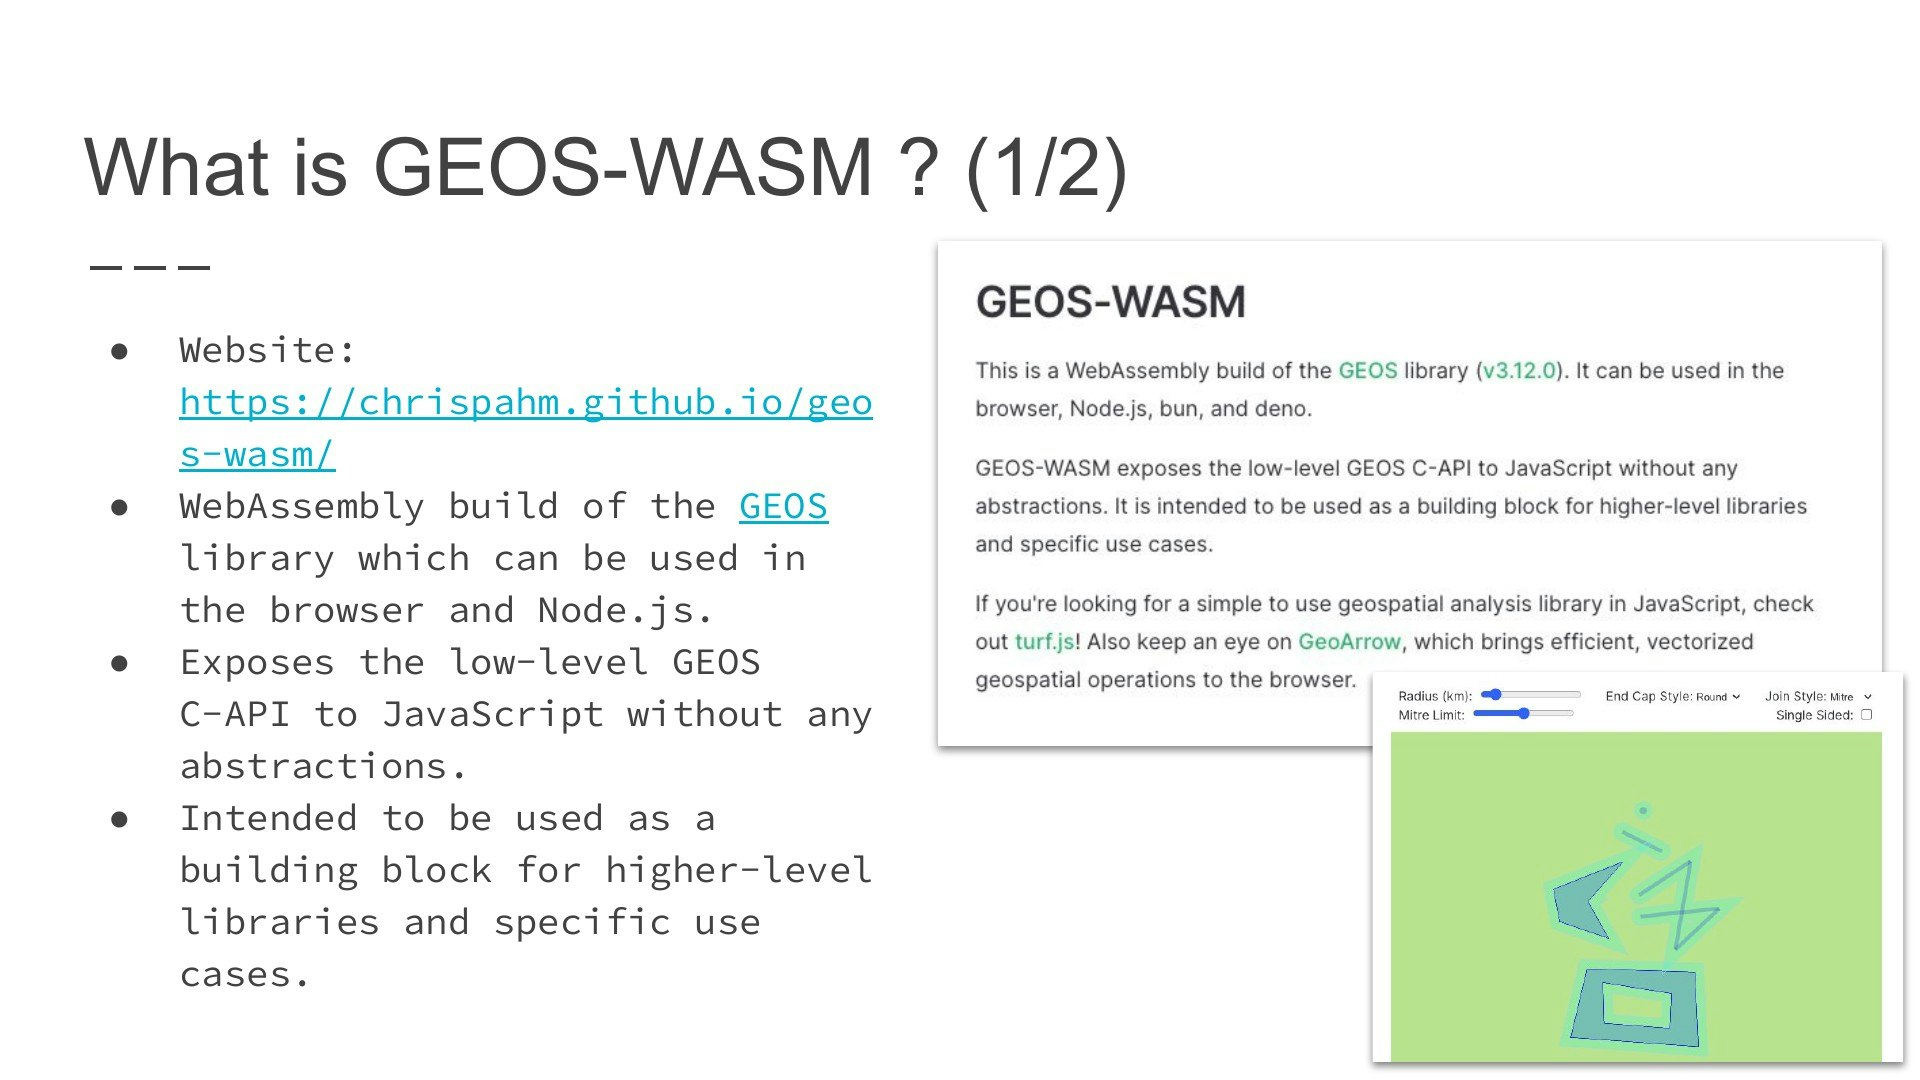 geos-wasm/5